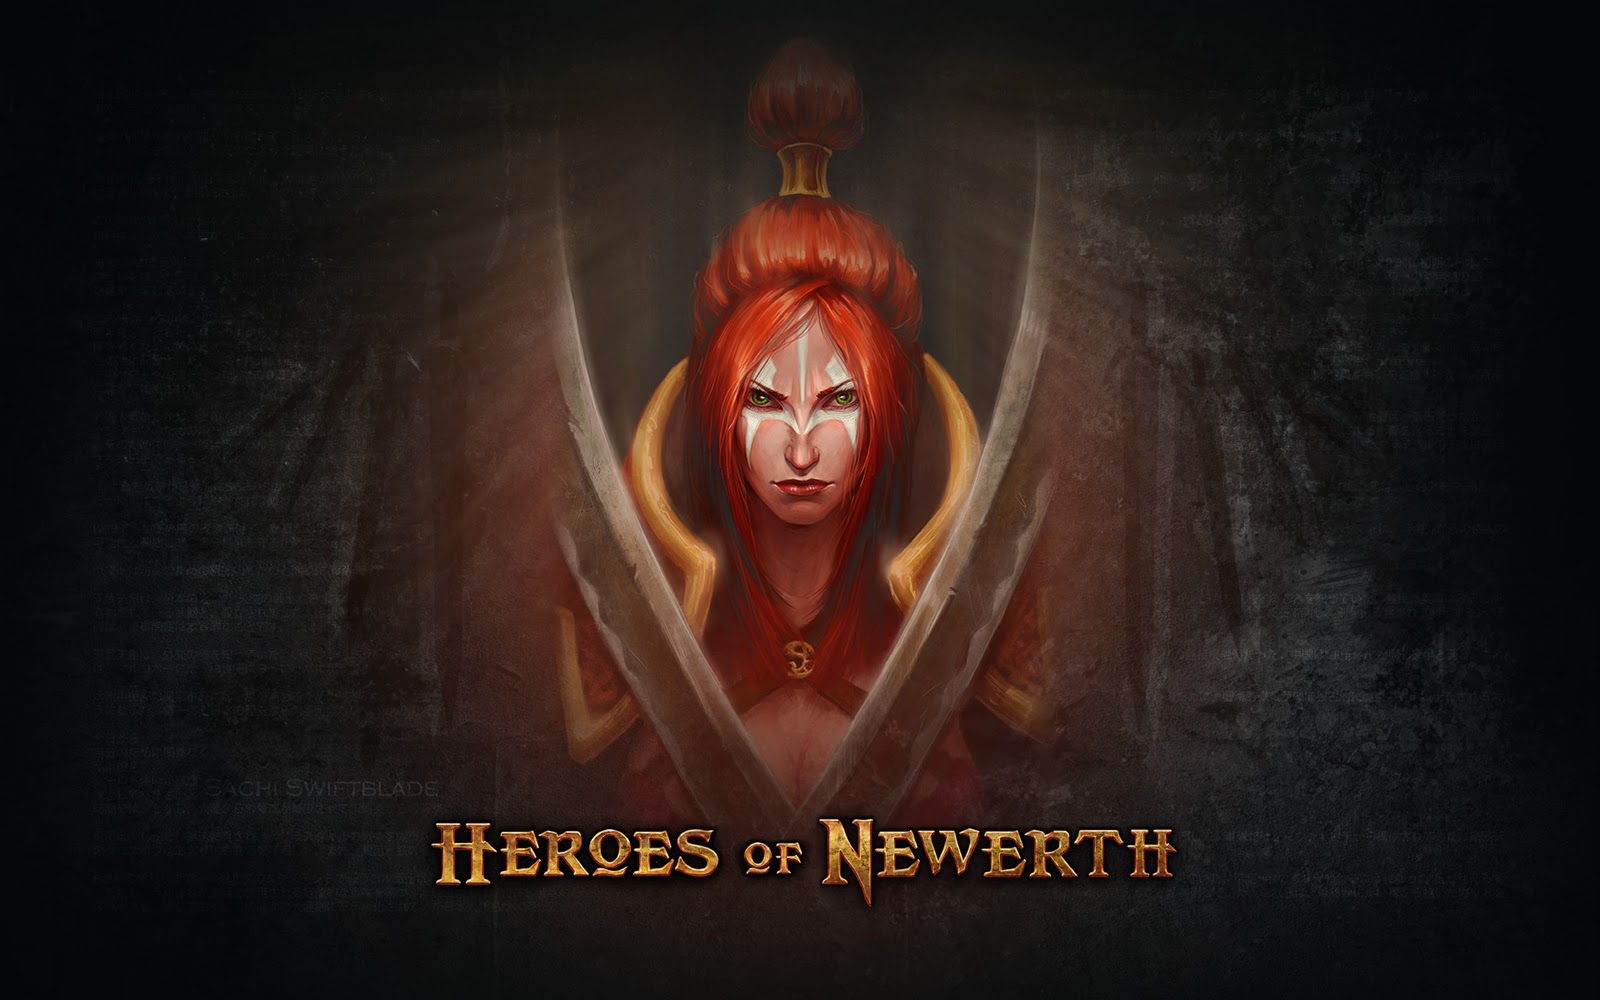 Heroes of newerth или дота фото 97